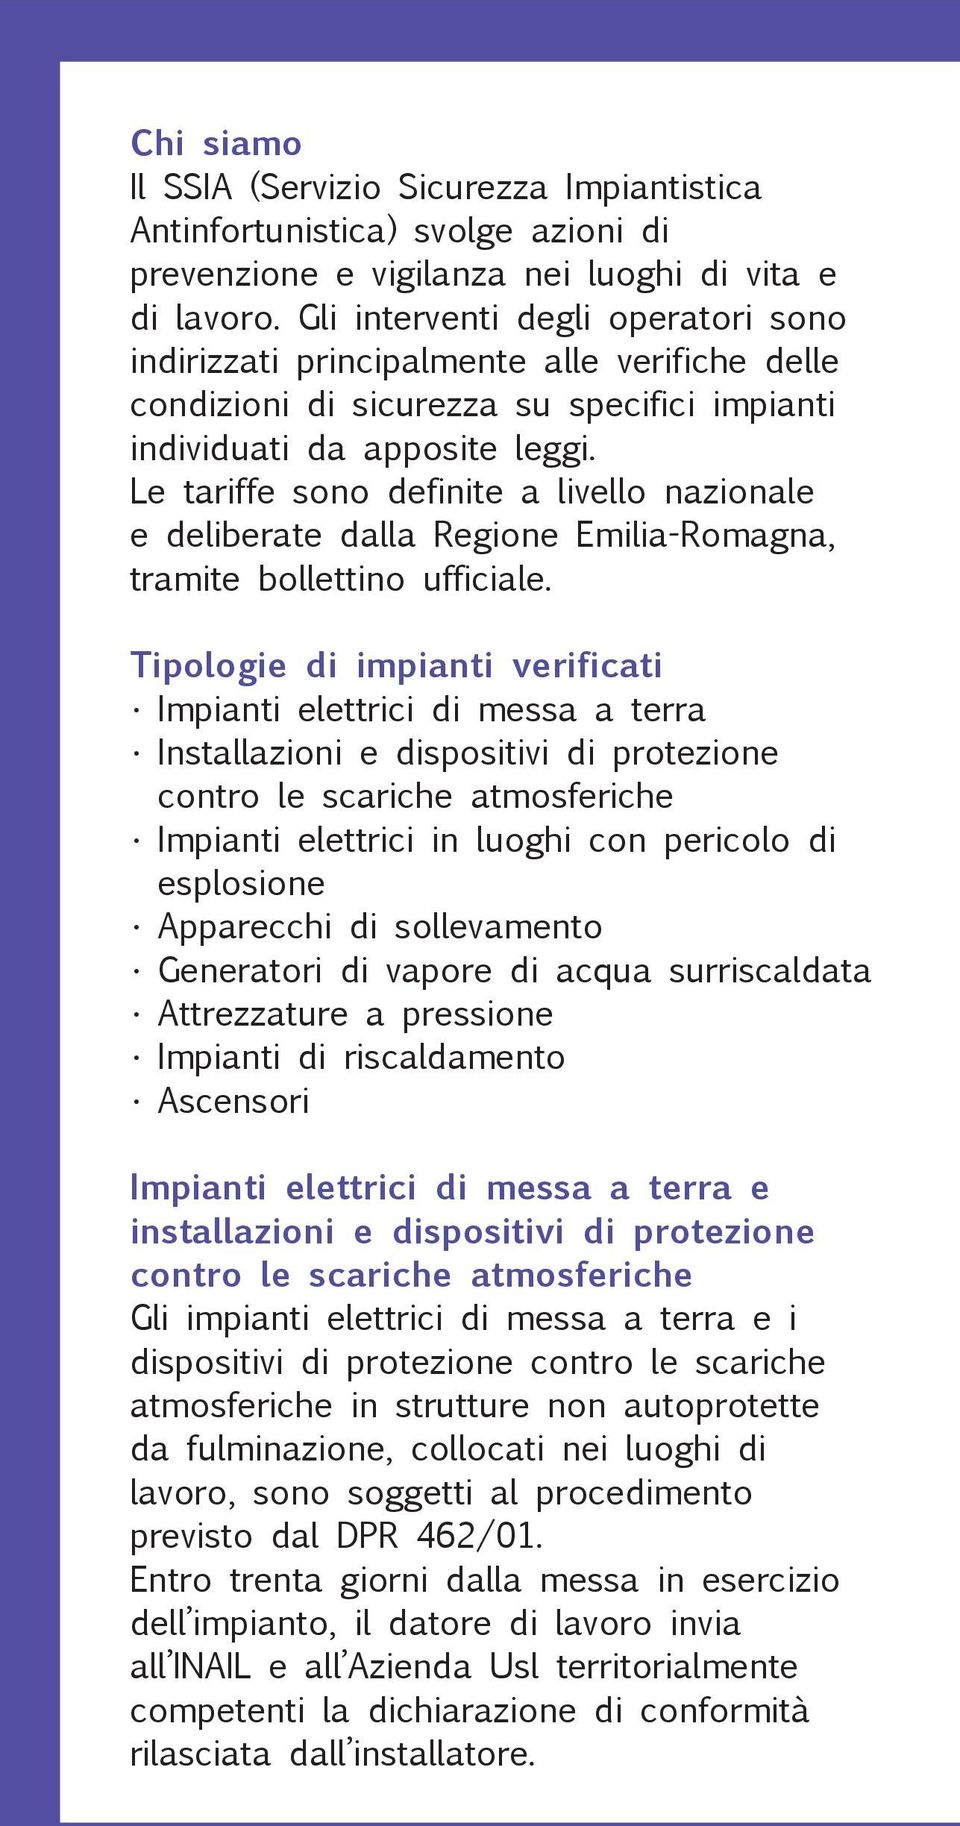 Le tariffe sono definite a livello nazionale e deliberate dalla Regione Emilia-Romagna, tramite bollettino ufficiale.